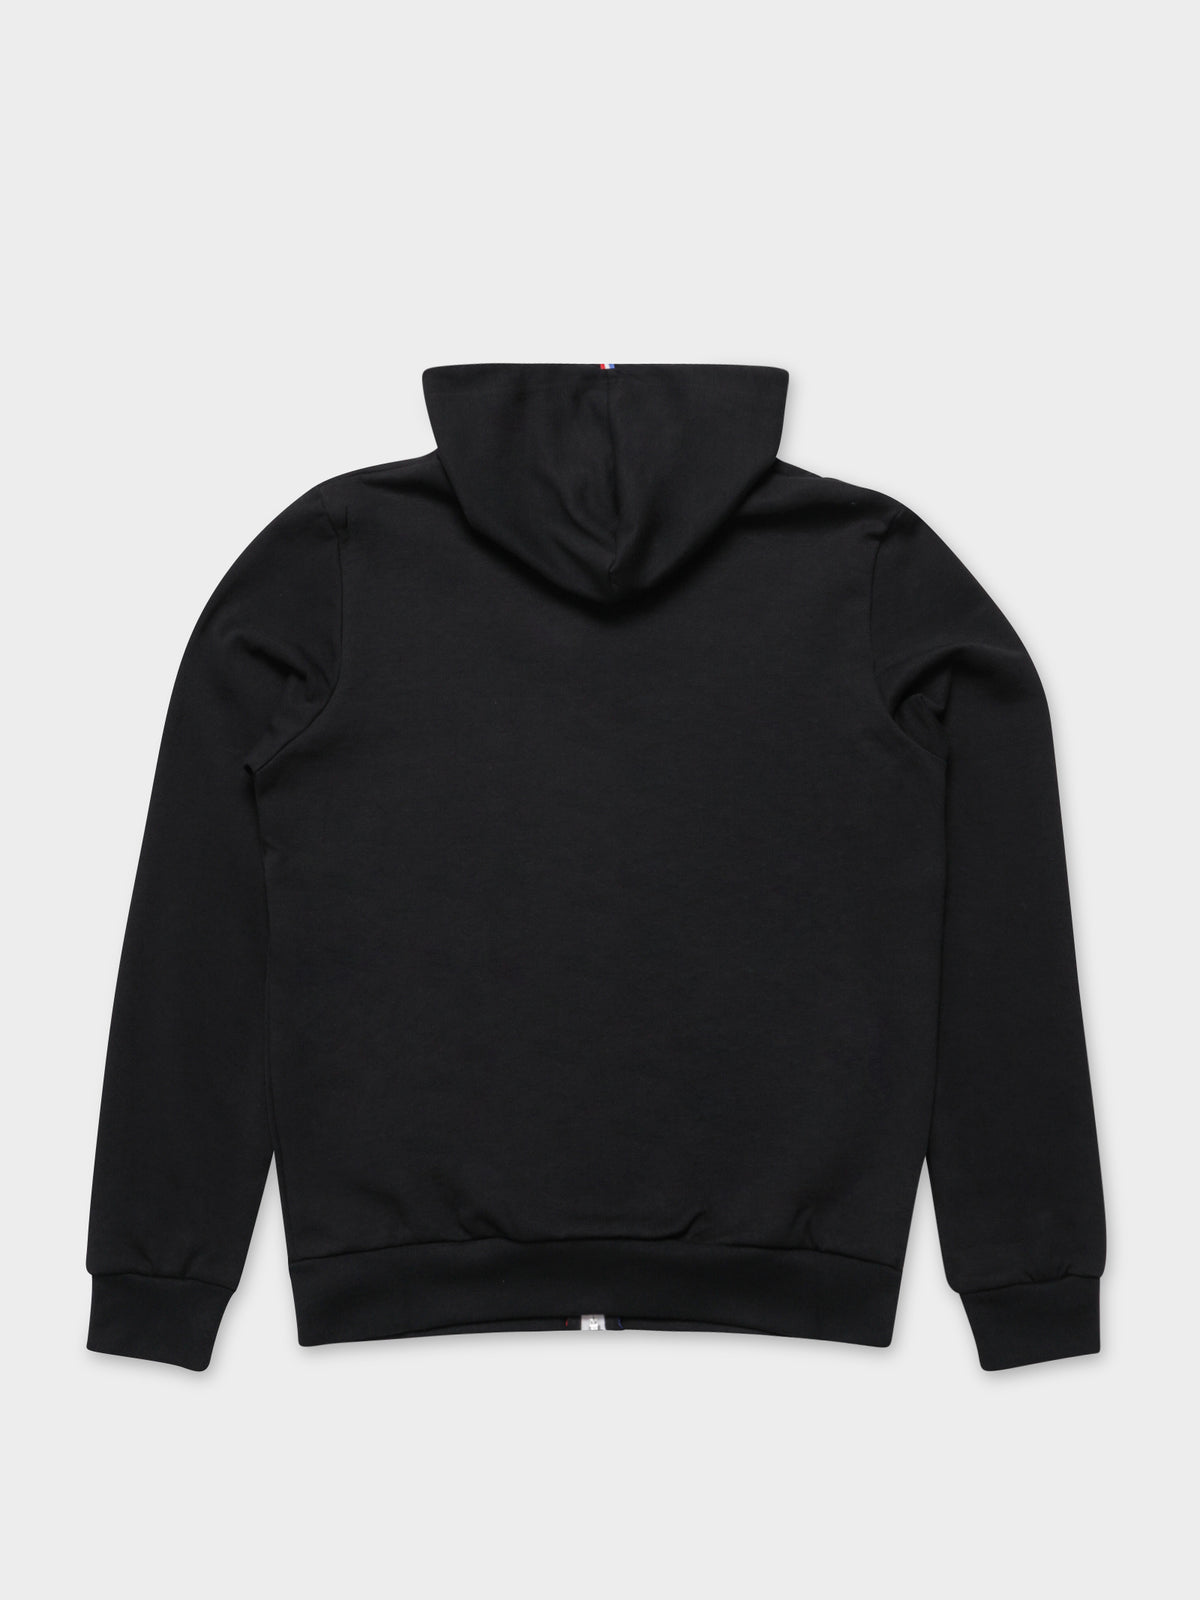 ESS Full Zip Hooded Jacket in Black